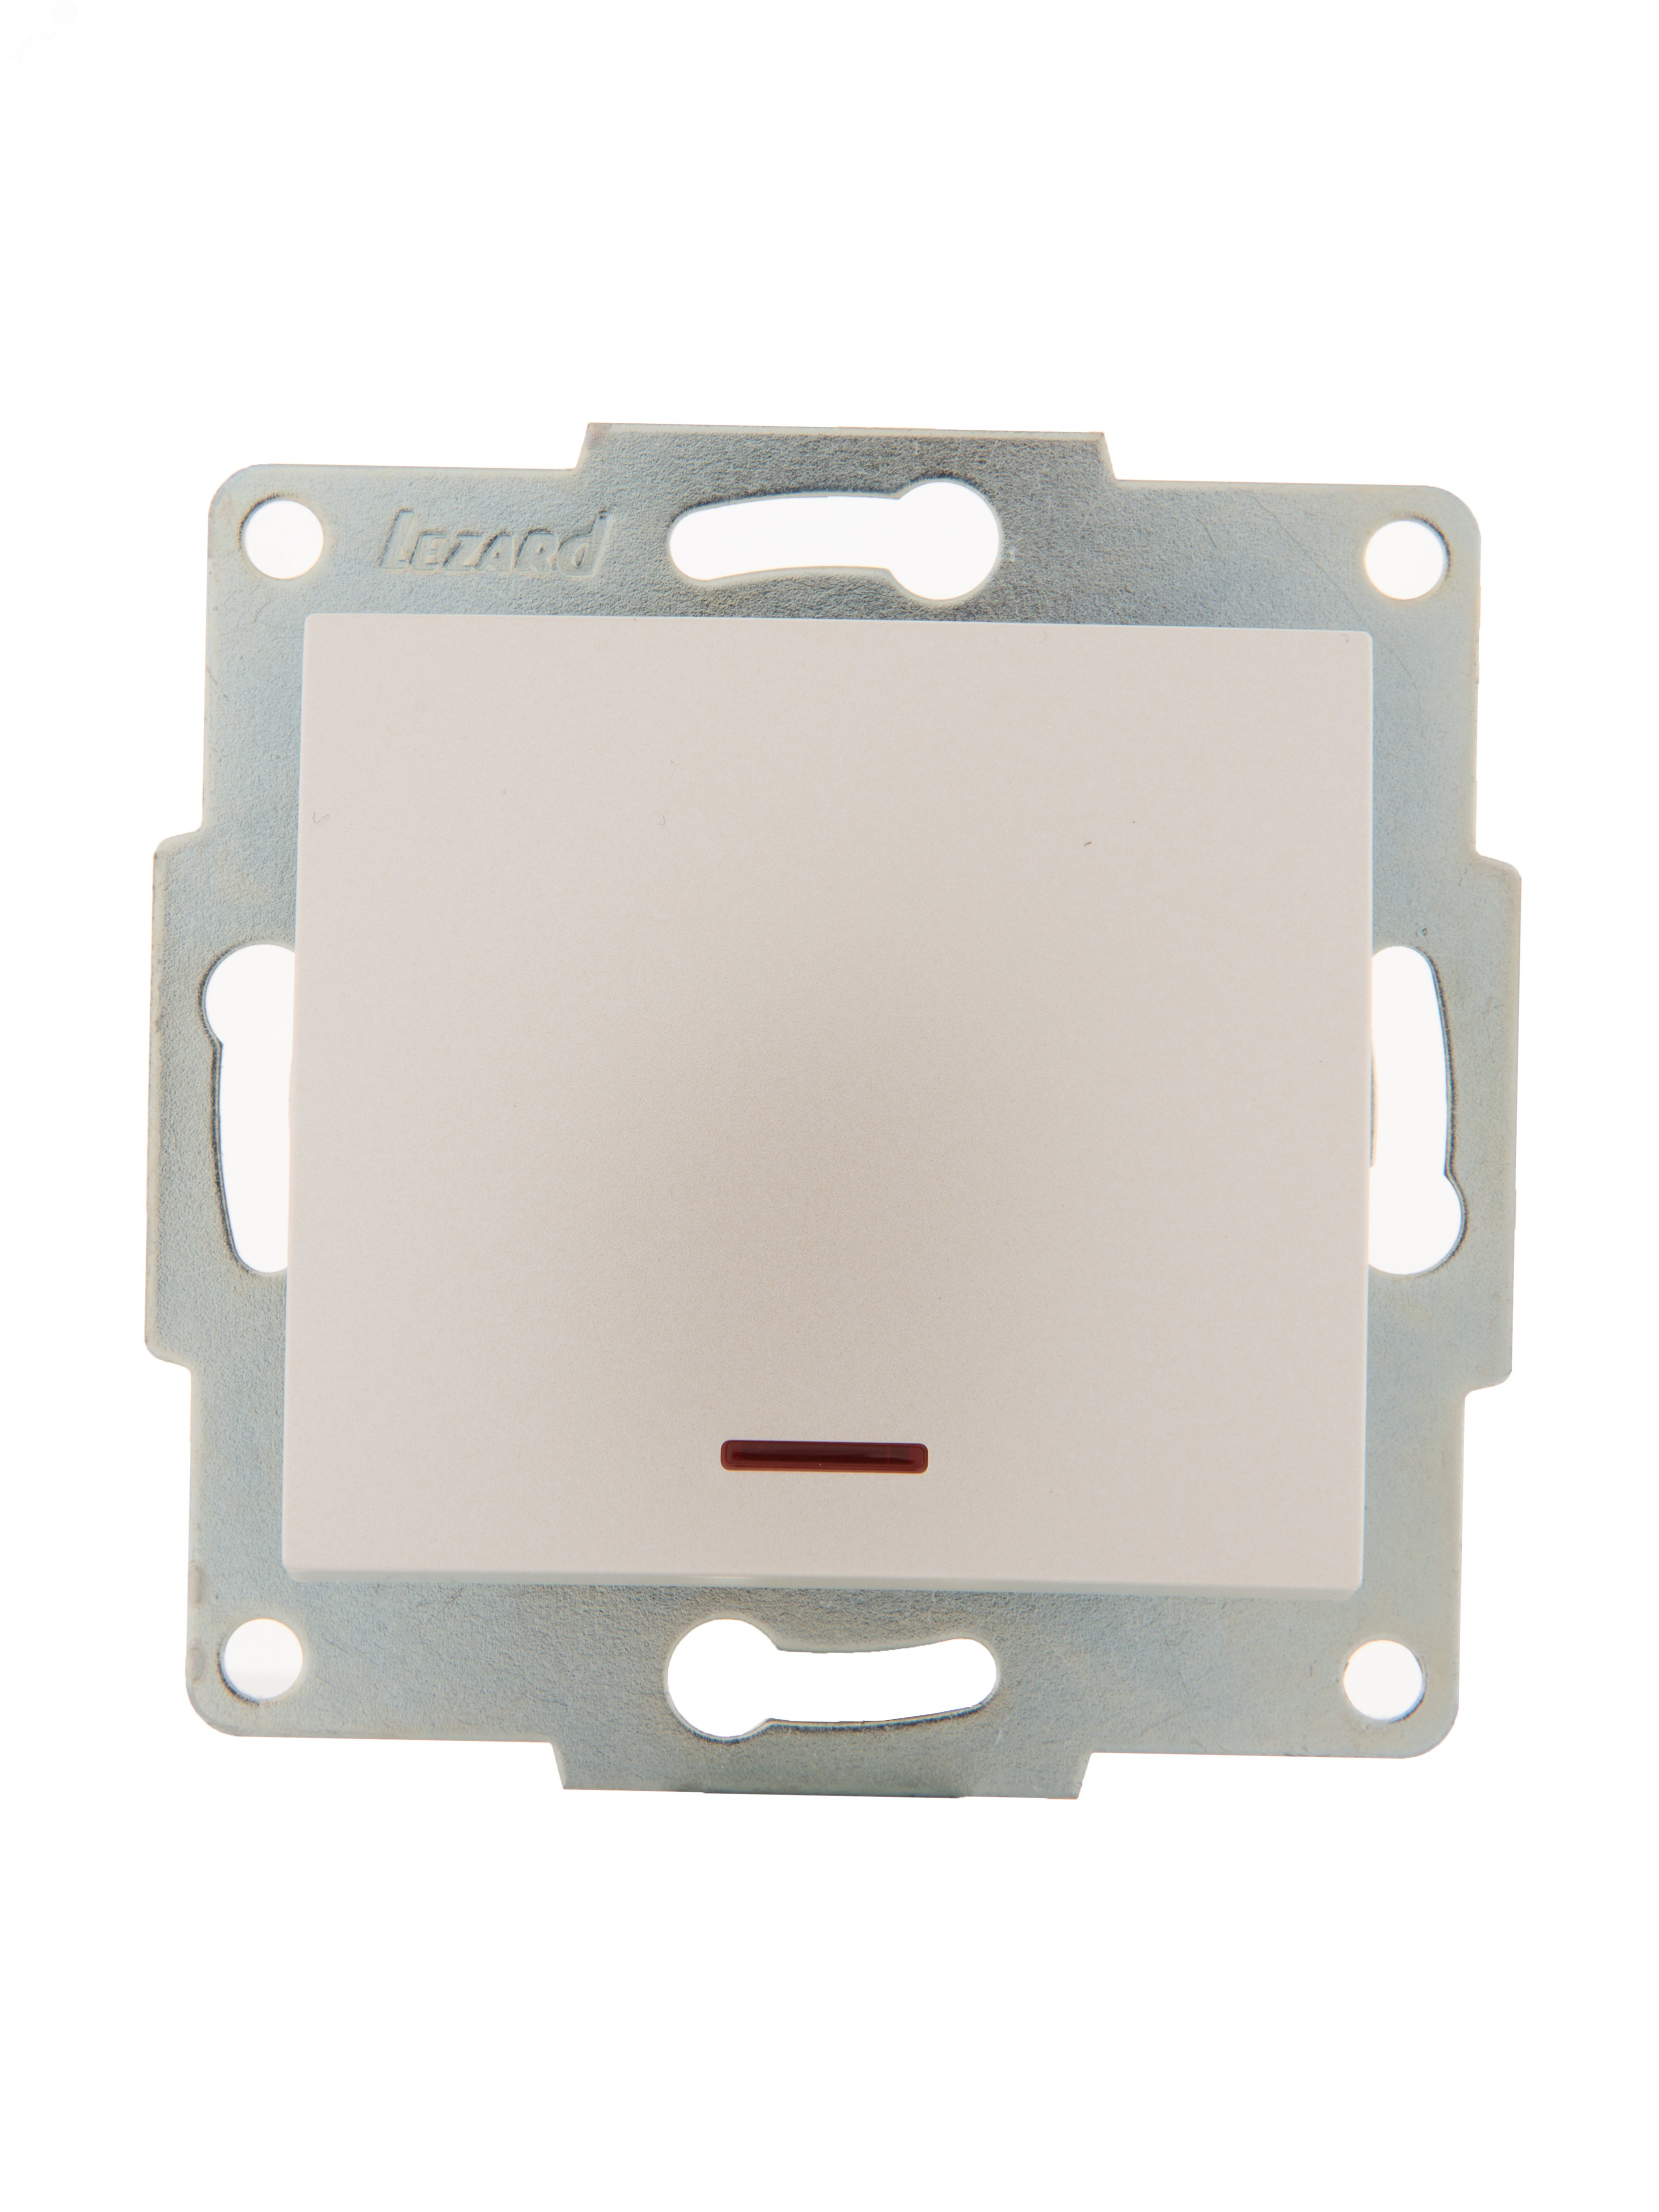 KARINA Выключатель с подсветкой жемчужно-белый перламутр  (10шт/120шт) 707-3088-111 Lezard